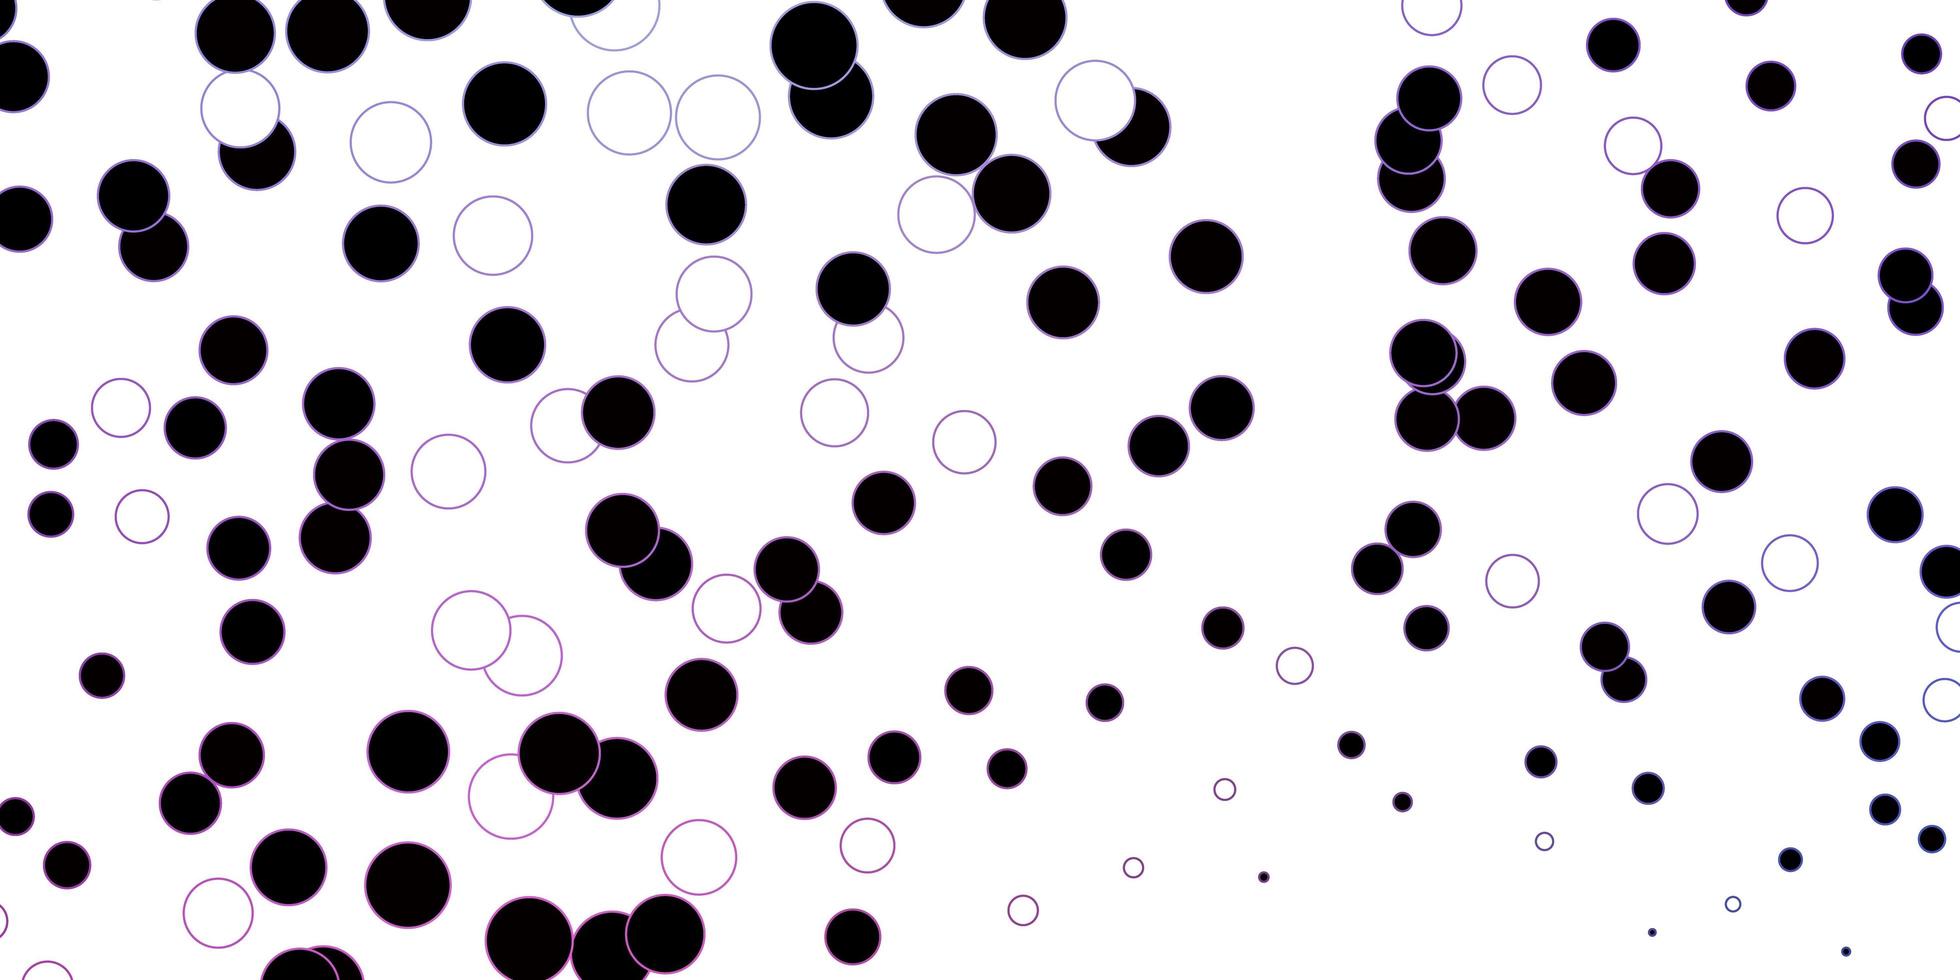 donker roze blauwe vector achtergrond met bubbels abstract decoratief ontwerp in gradiëntstijl met bubbels ontwerp voor posters banners